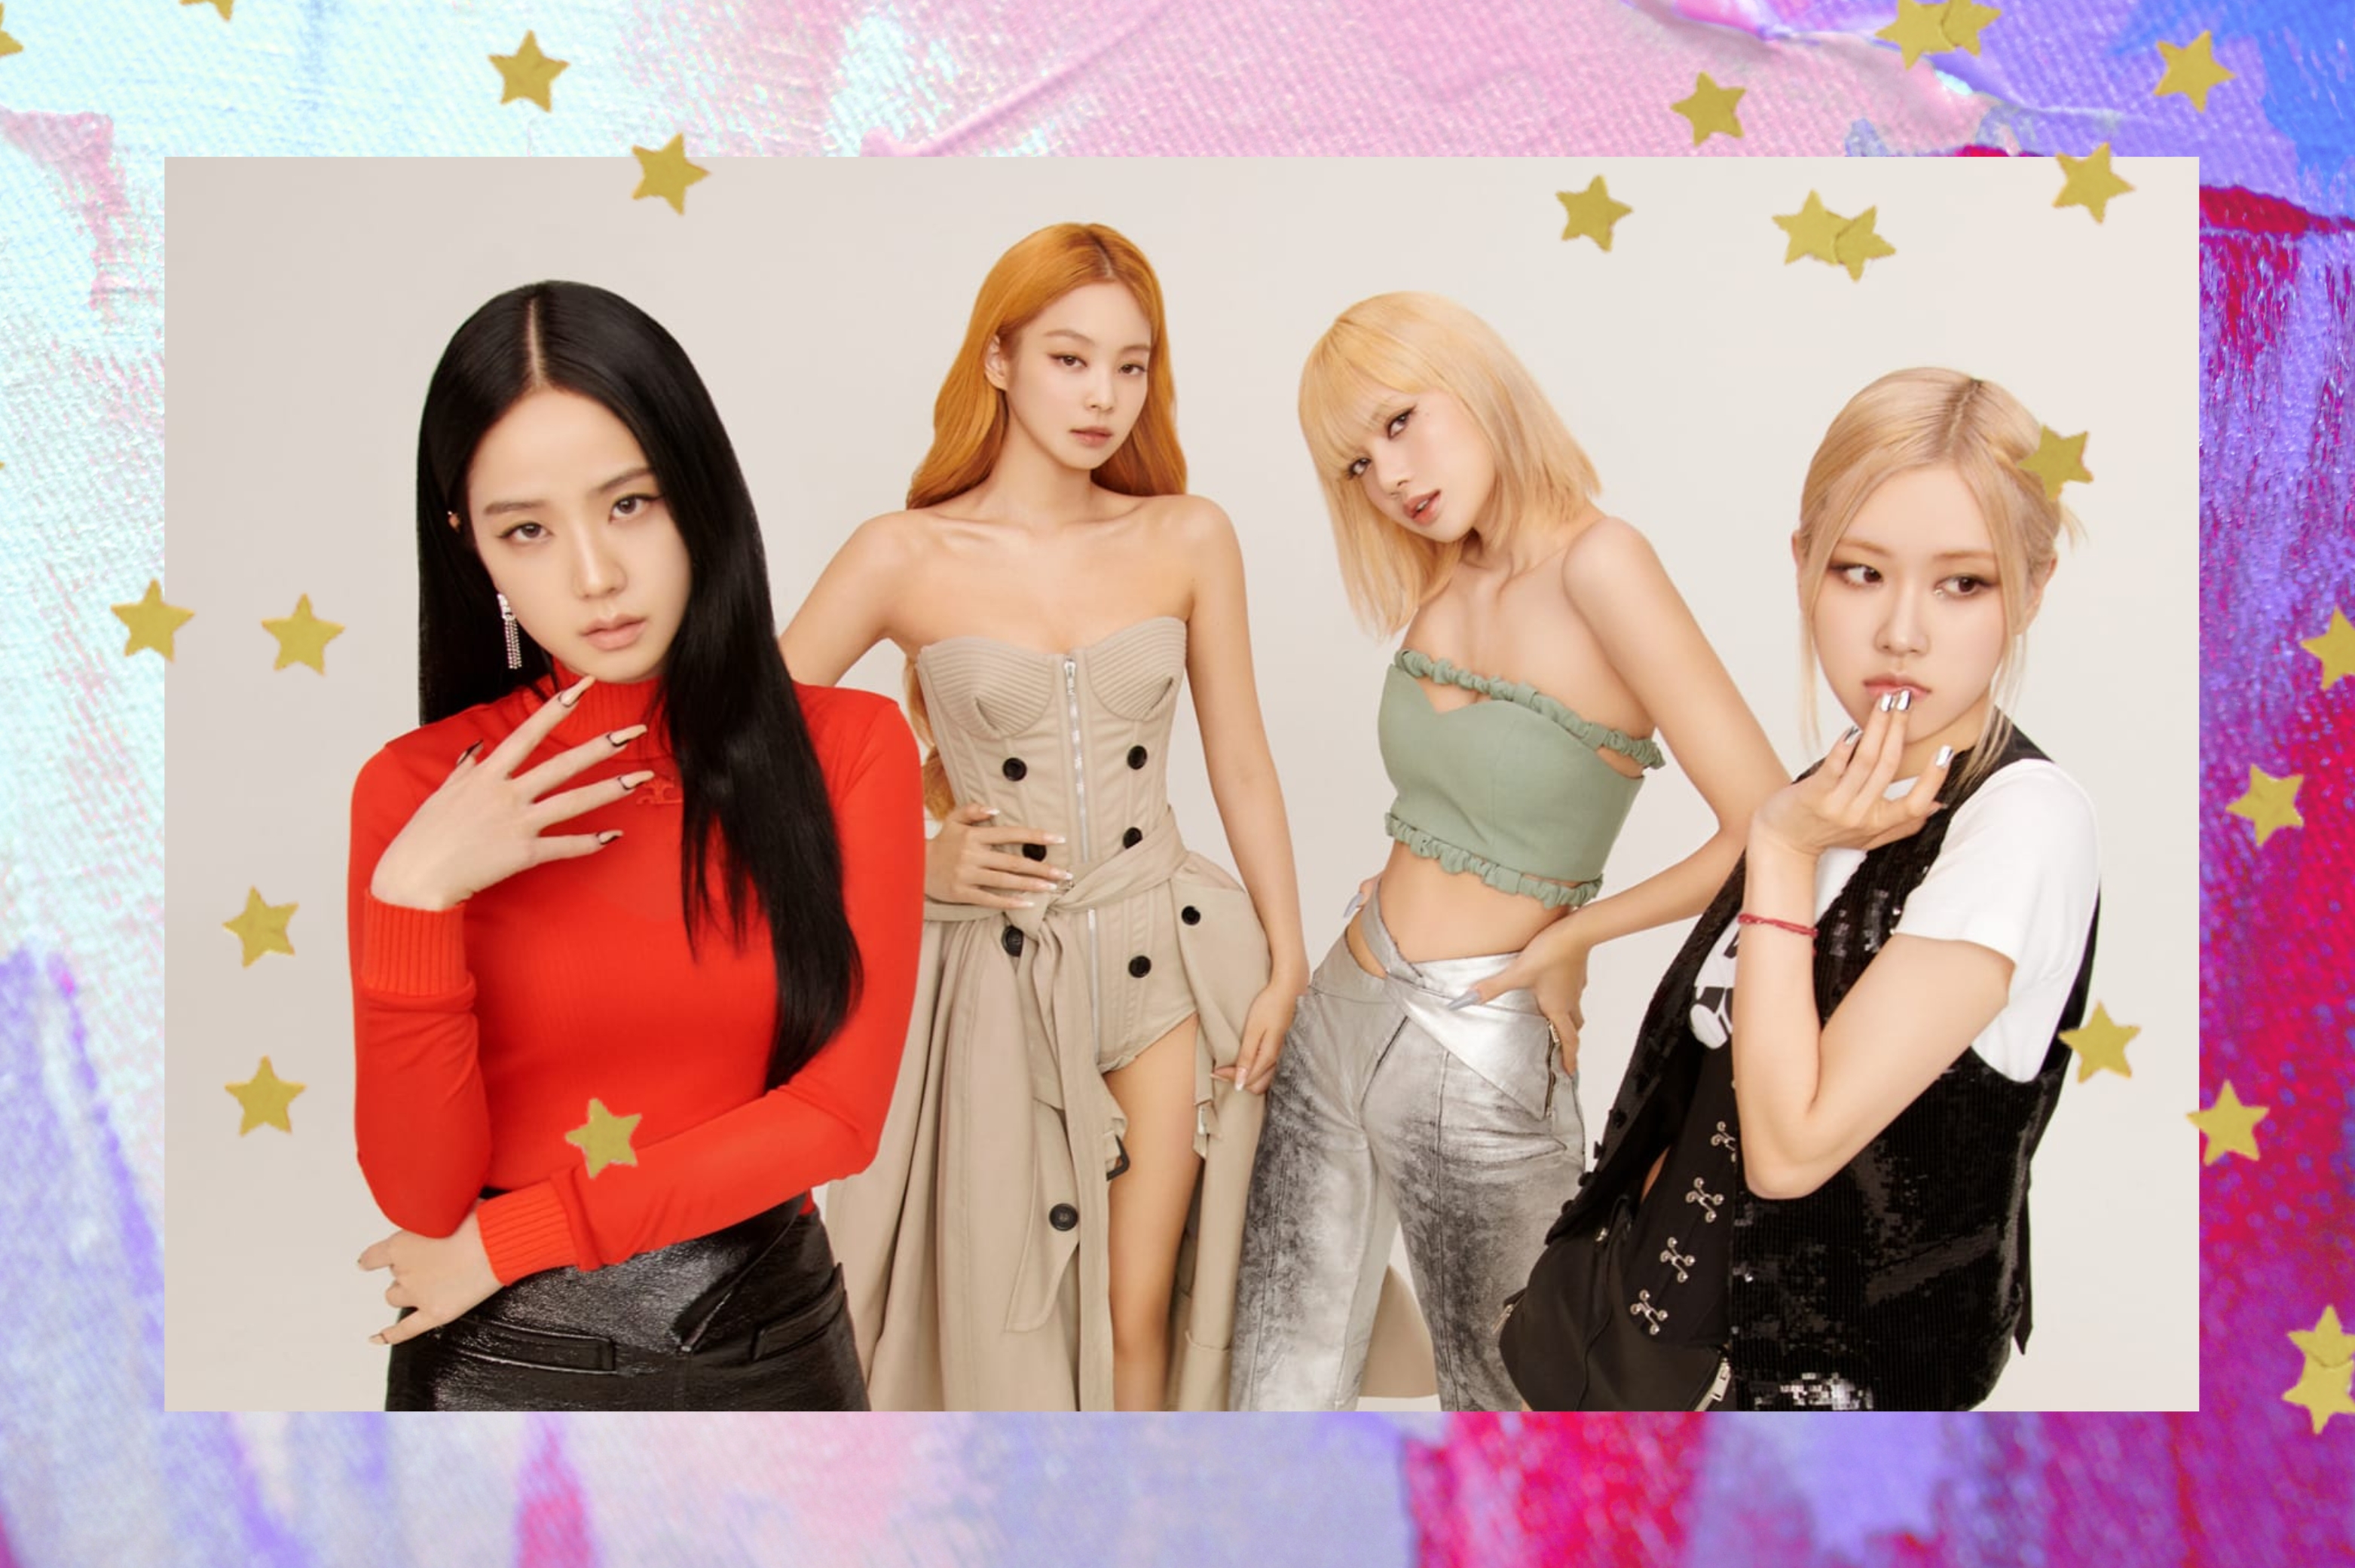 Montagem com o fundo colorido em tons de roxo com detalhe de estrelas douradas na borda com a foto da girl group de k-pop Blackpink no centro. Todas olham para a câmera e não sorriem.